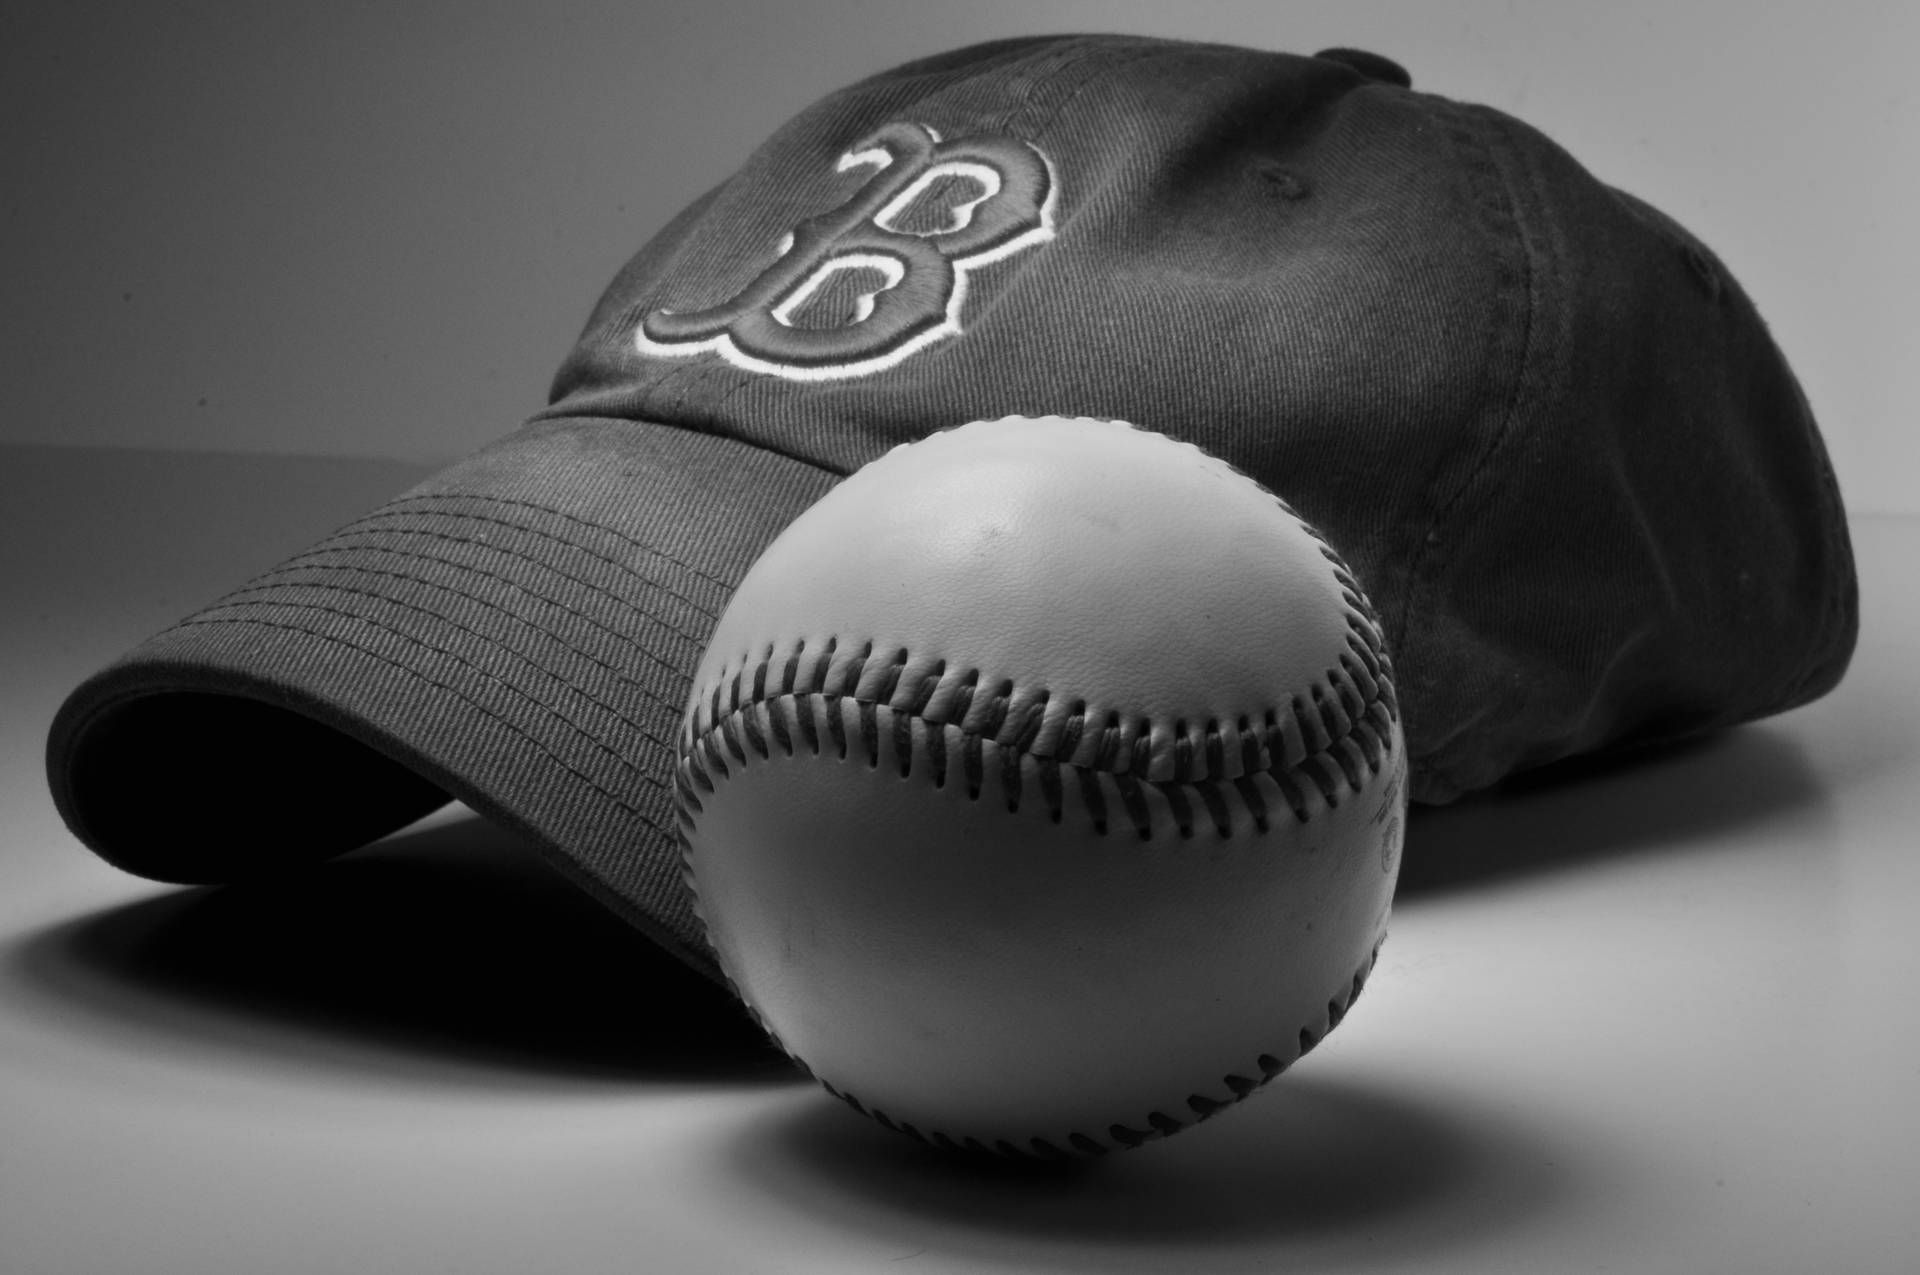 Red Sox Cap And Baseball